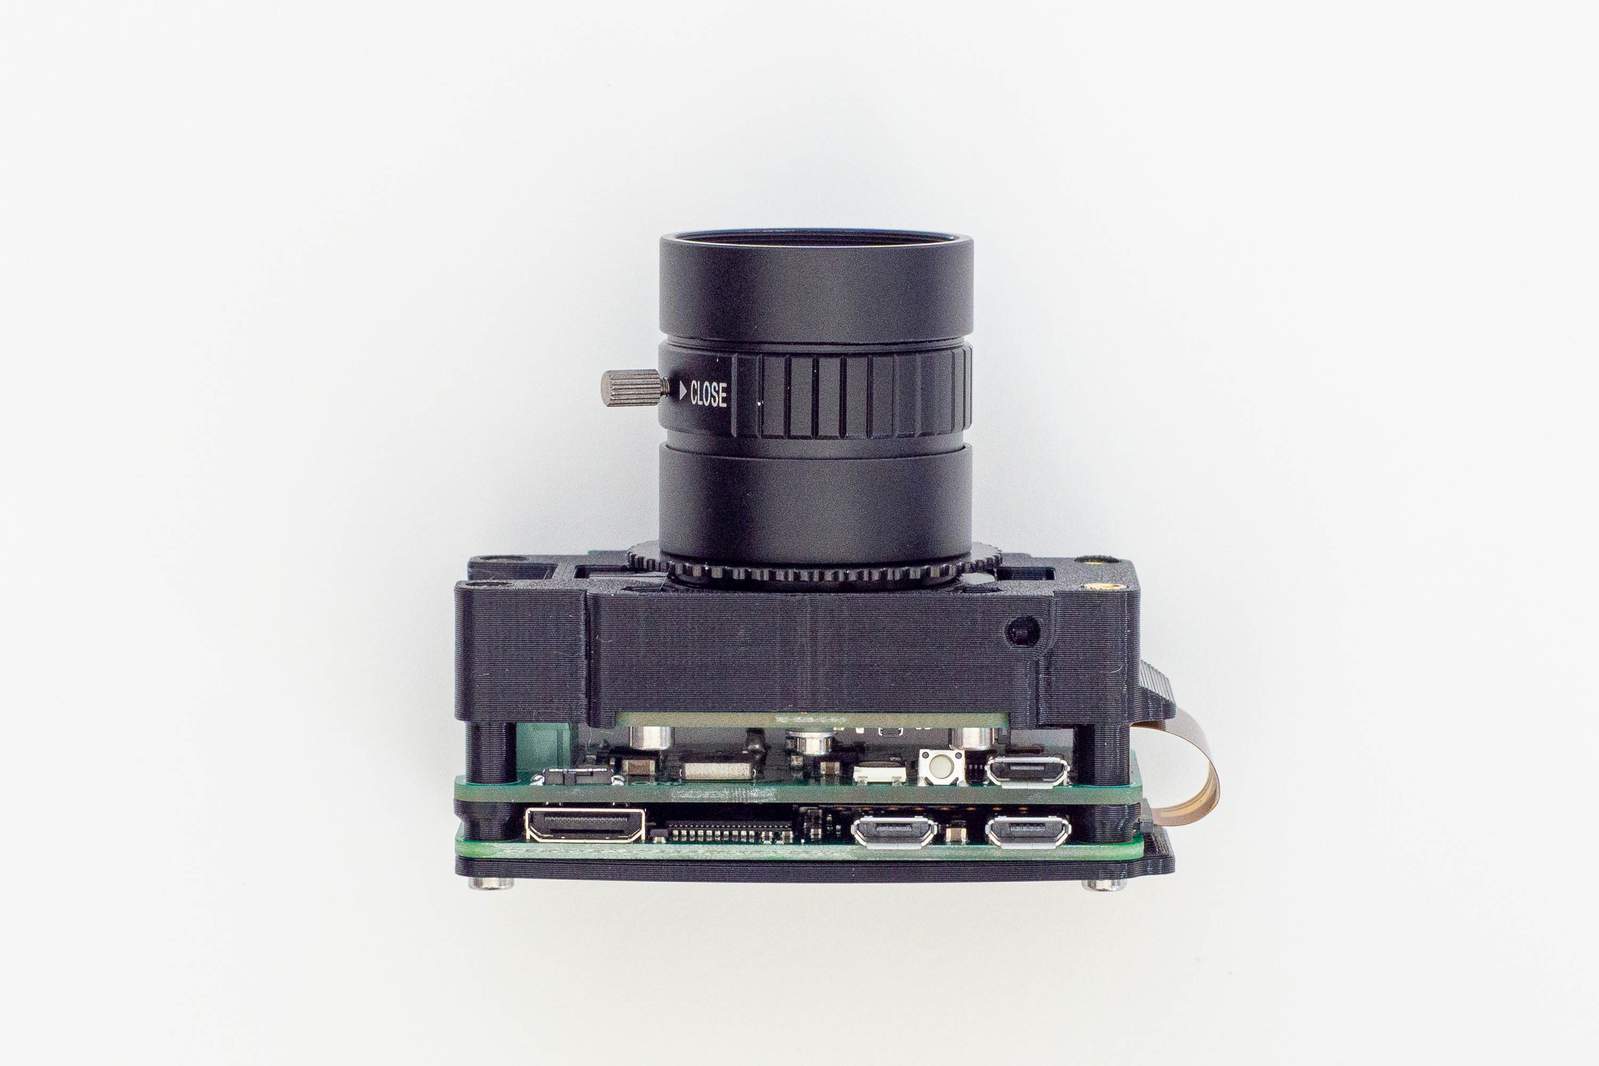 Lens assembly